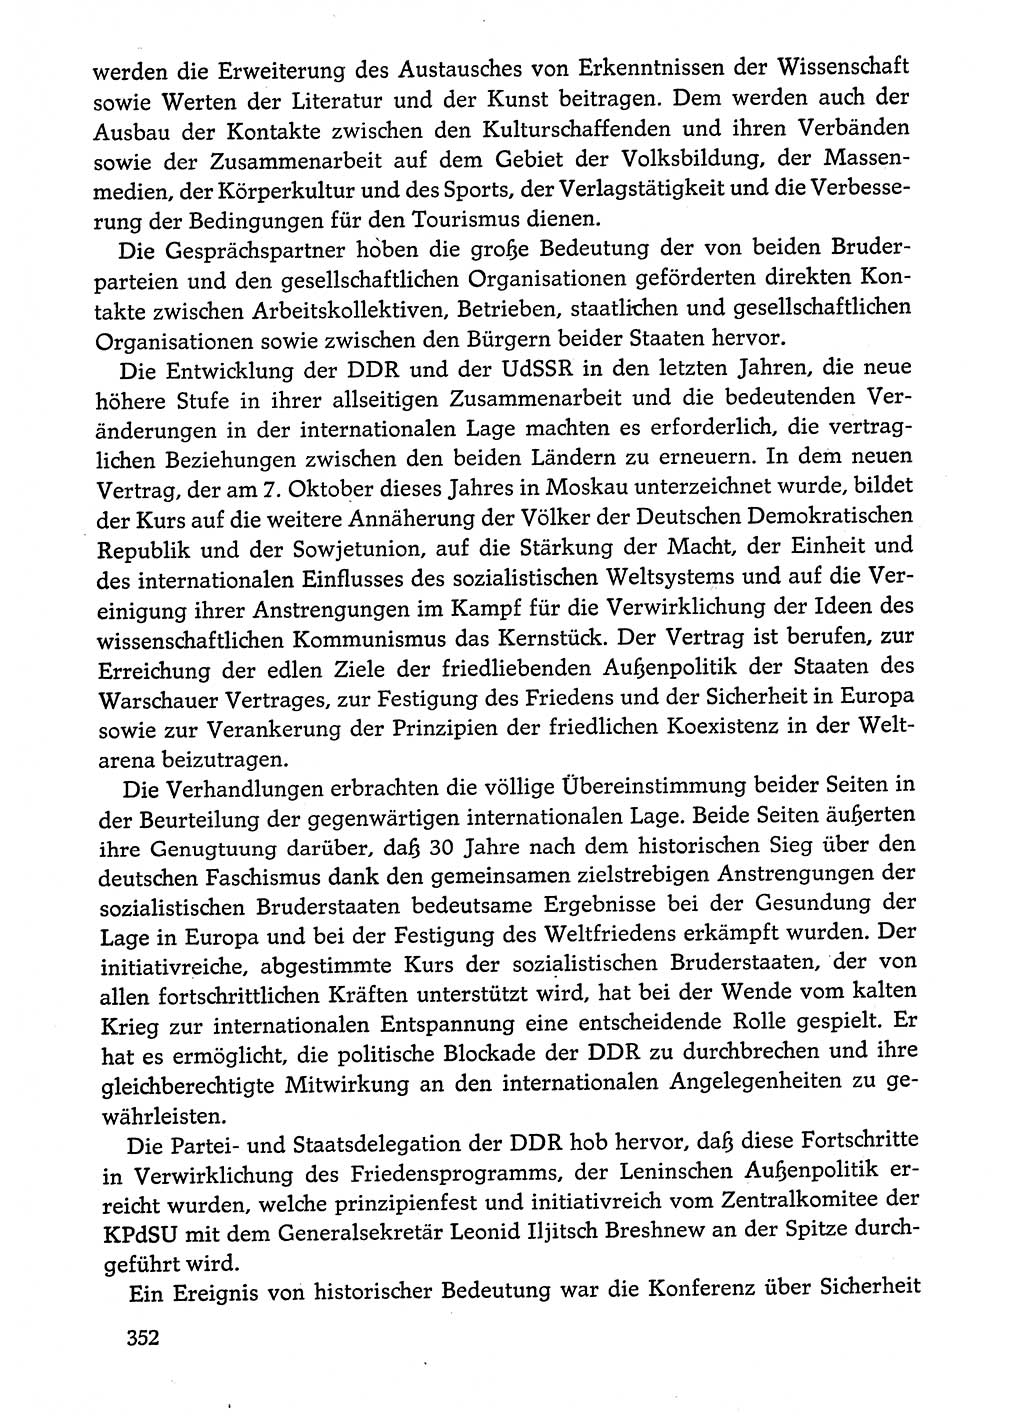 Dokumente der Sozialistischen Einheitspartei Deutschlands (SED) [Deutsche Demokratische Republik (DDR)] 1974-1975, Seite 352 (Dok. SED DDR 1978, Bd. ⅩⅤ, S. 352)